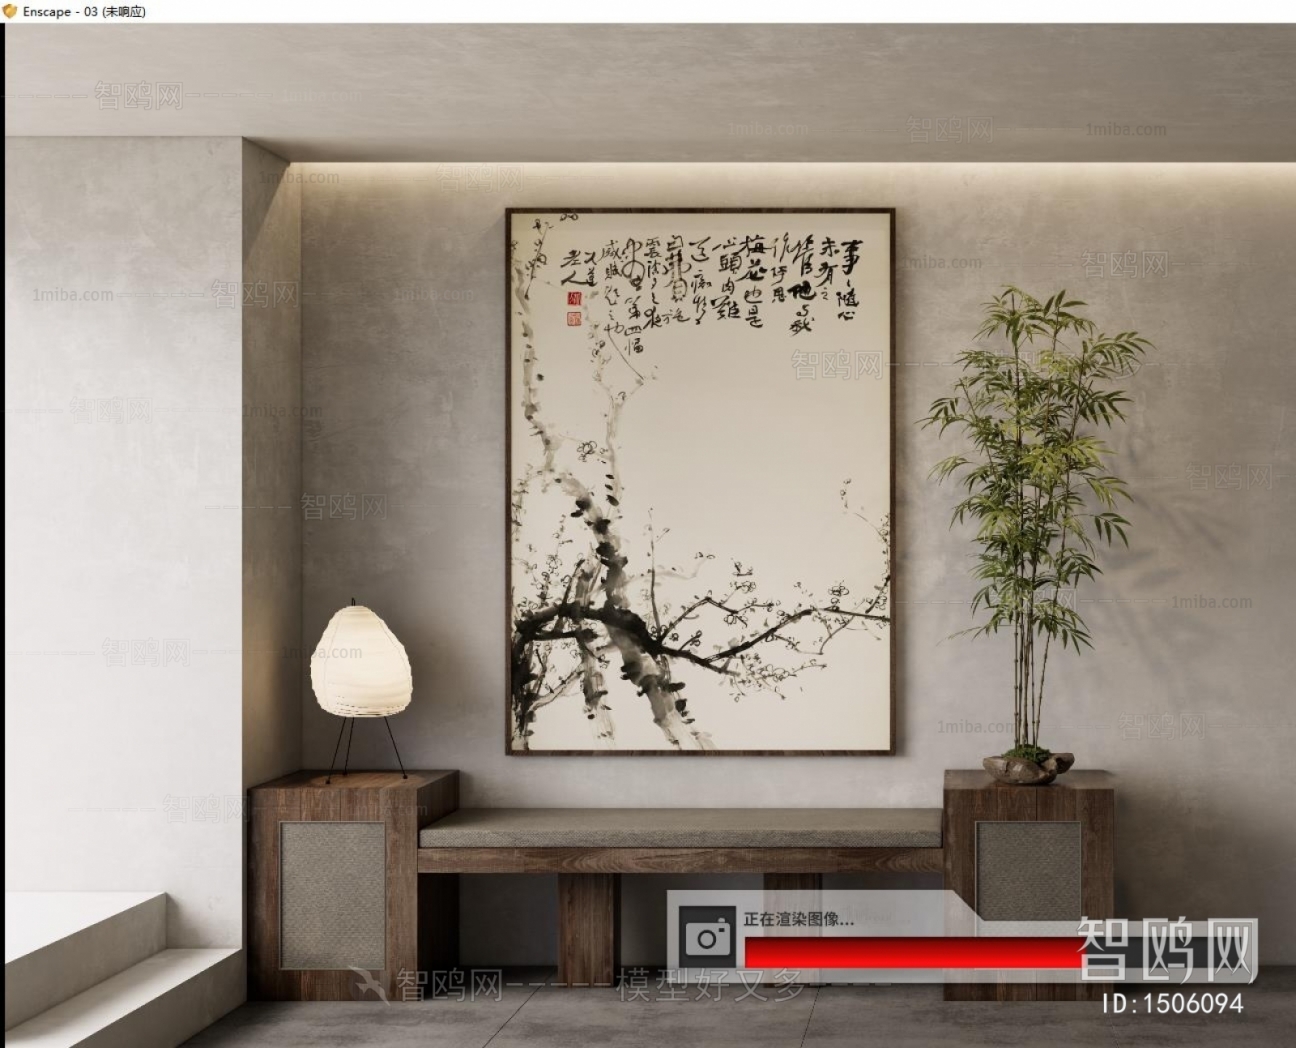 Chinese Style Wabi-sabi Style Painting